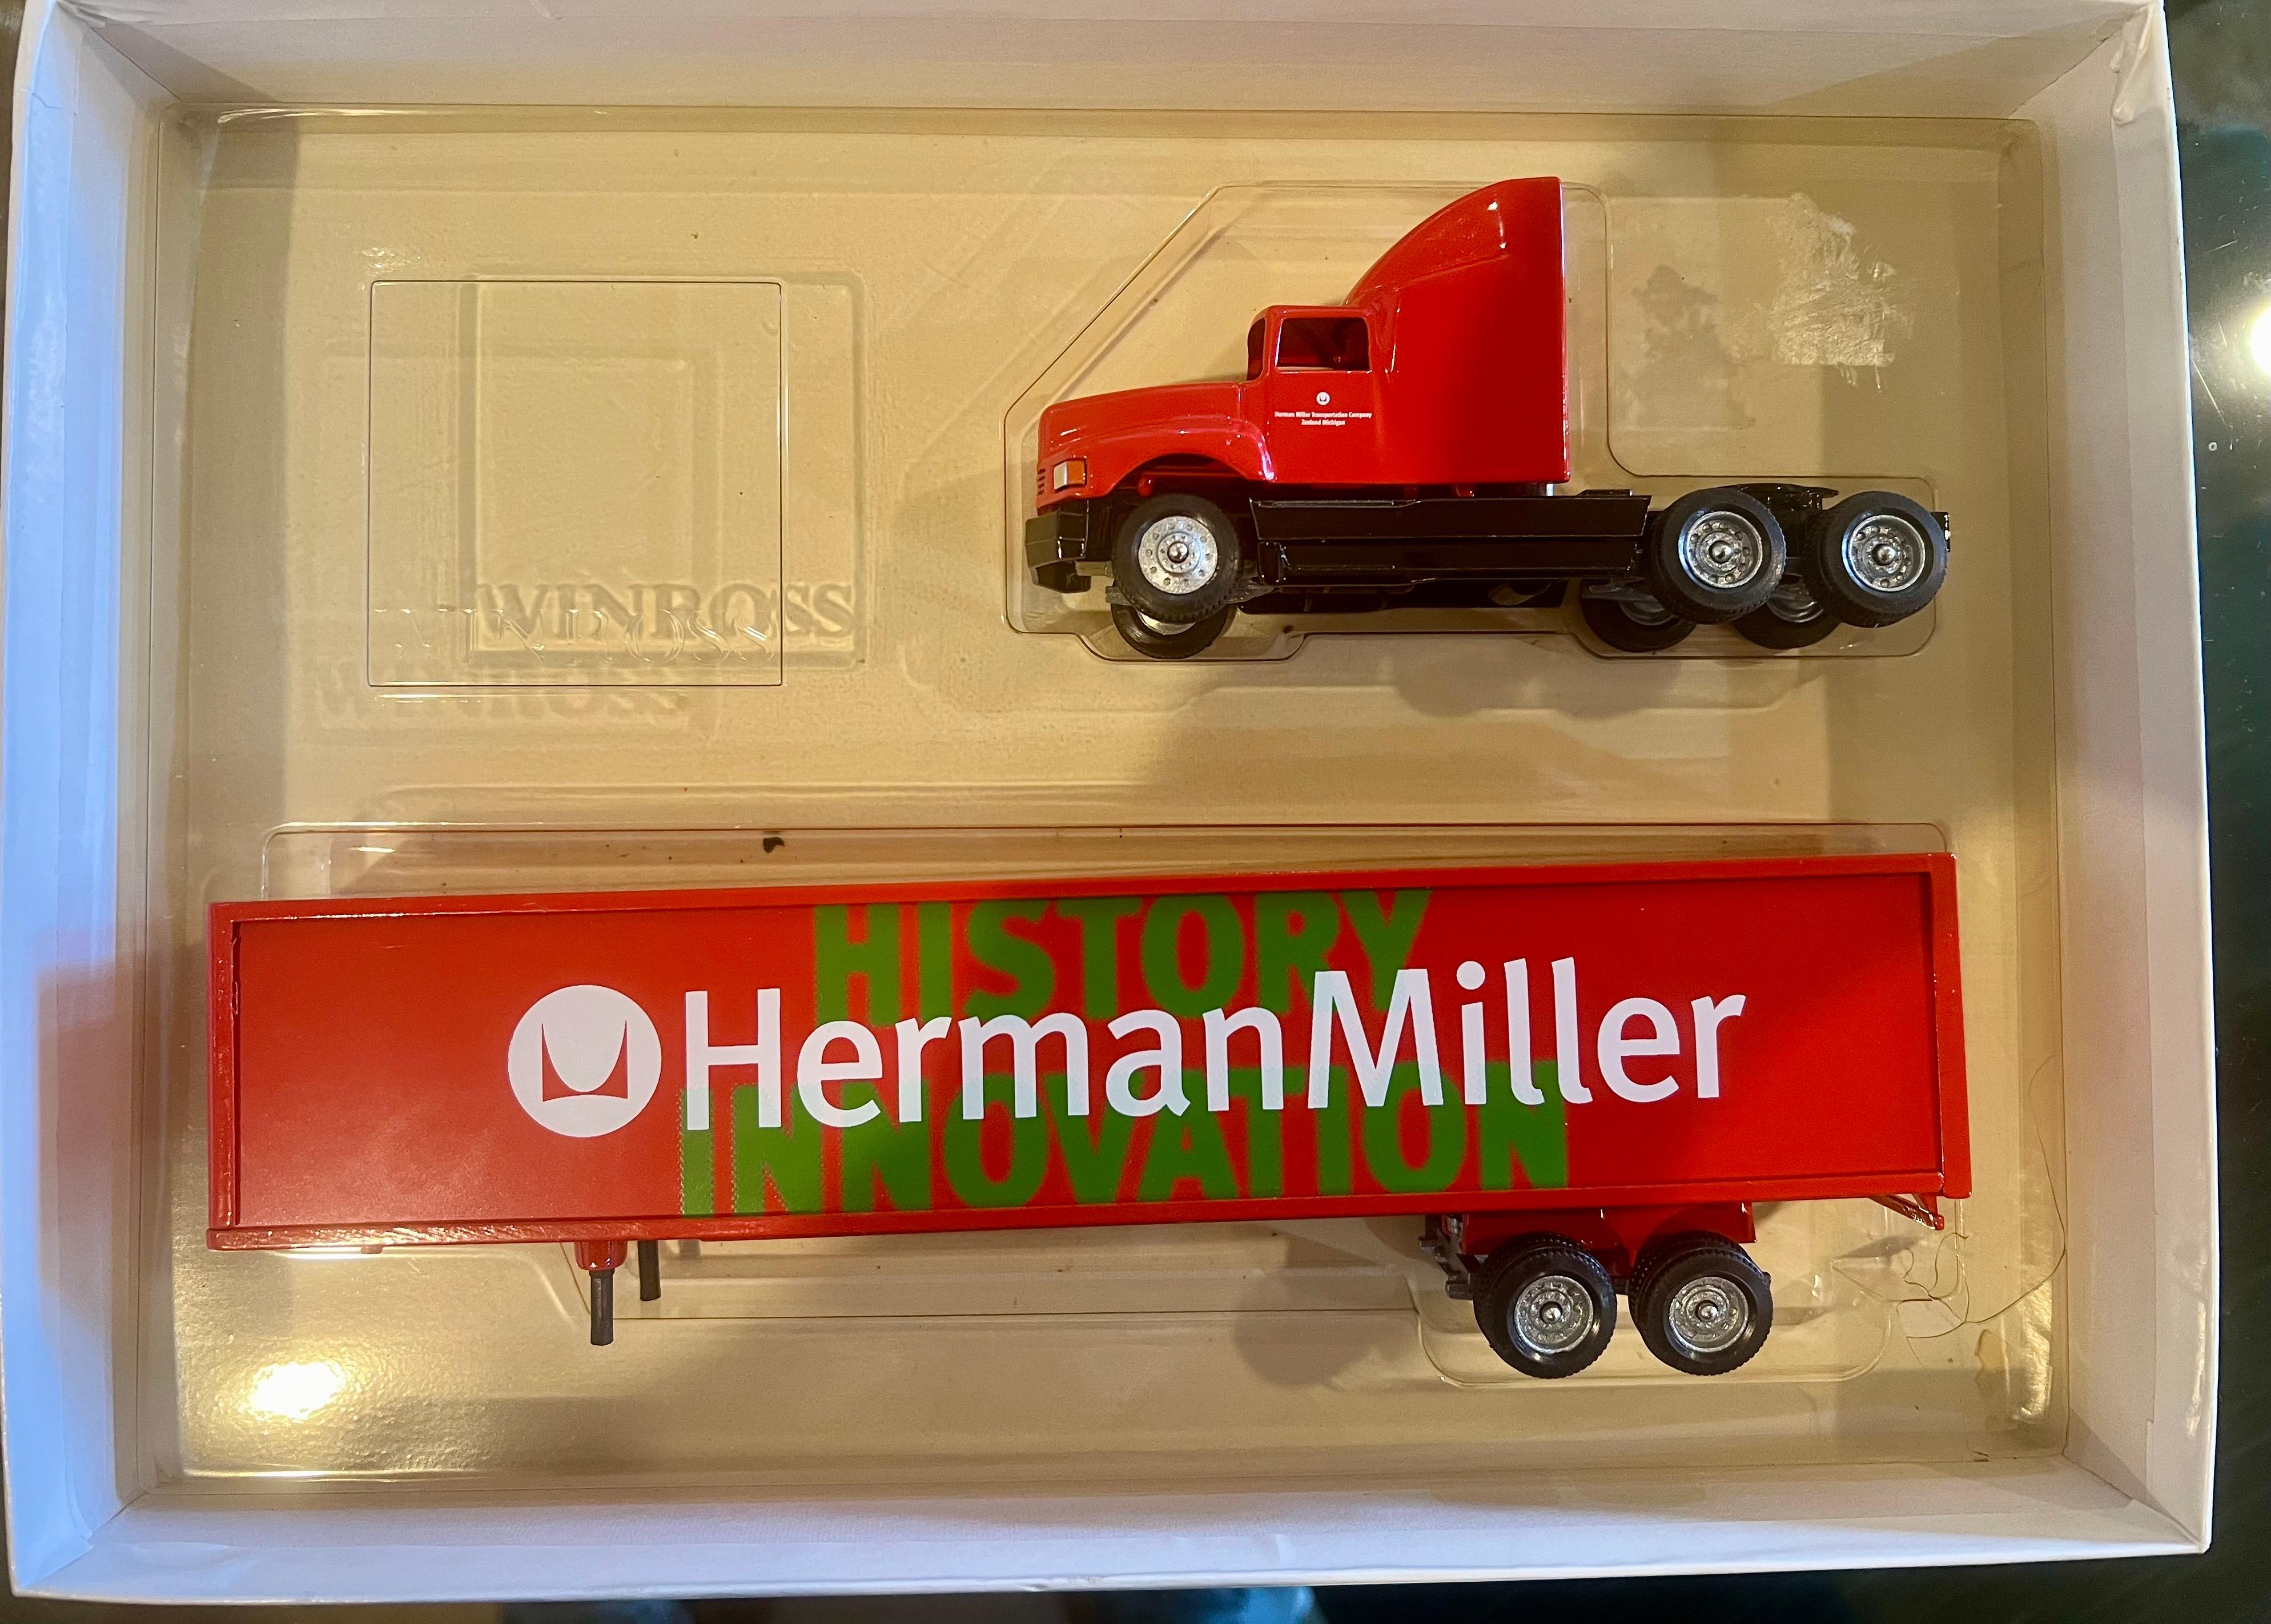 Sehr cooler originaler seltener Truck mit Herman Miller Logo, ca. 1980er Jahre, ausgezeichneter Zustand, Originalverpackung, ideal für jeden Mid Century Danish Modern Sammler.